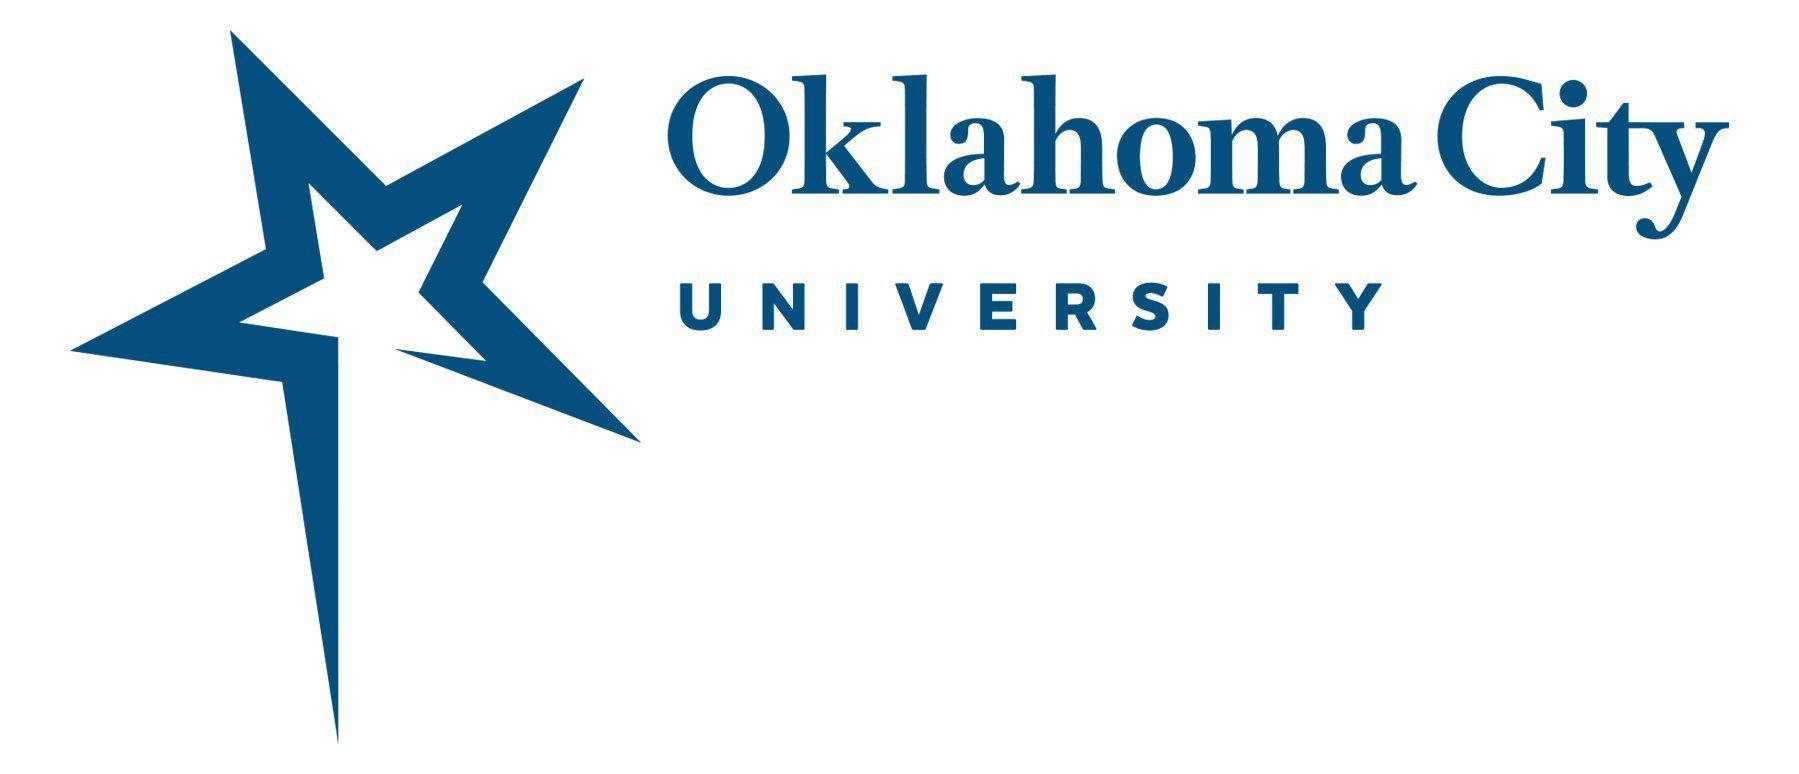 Ocu Logo - Official Logos City University